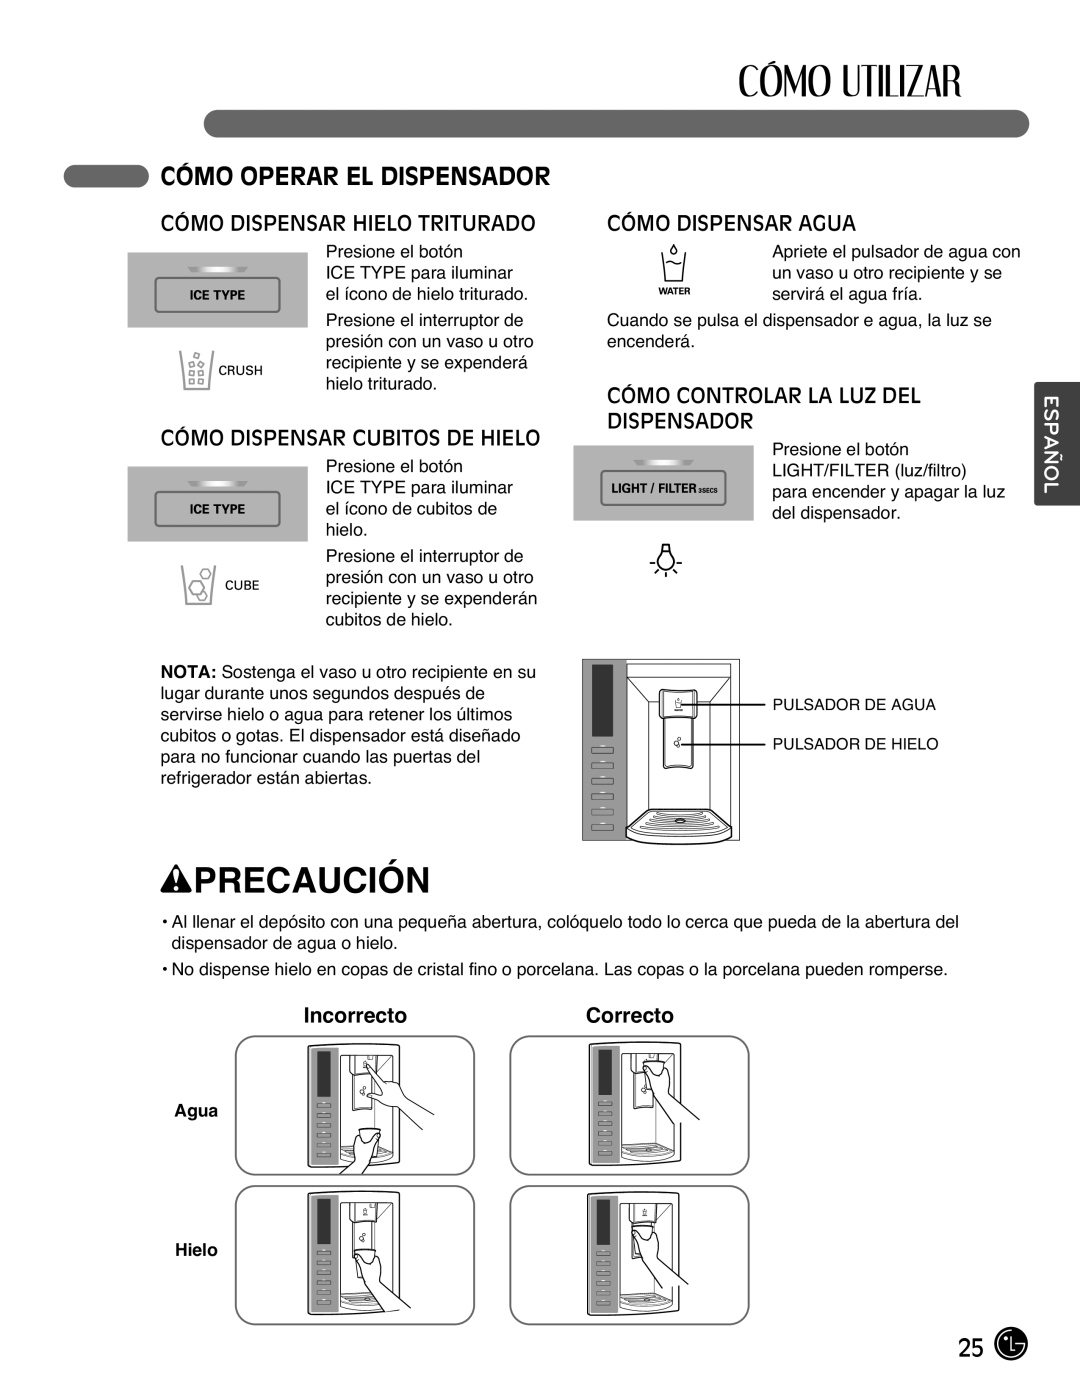 LG Electronics LMX25988ST Cómo Operar El Dispensador, Cómo Dispensar Hielo Triturado, Cómo Dispensar Cubitos De Hielo 